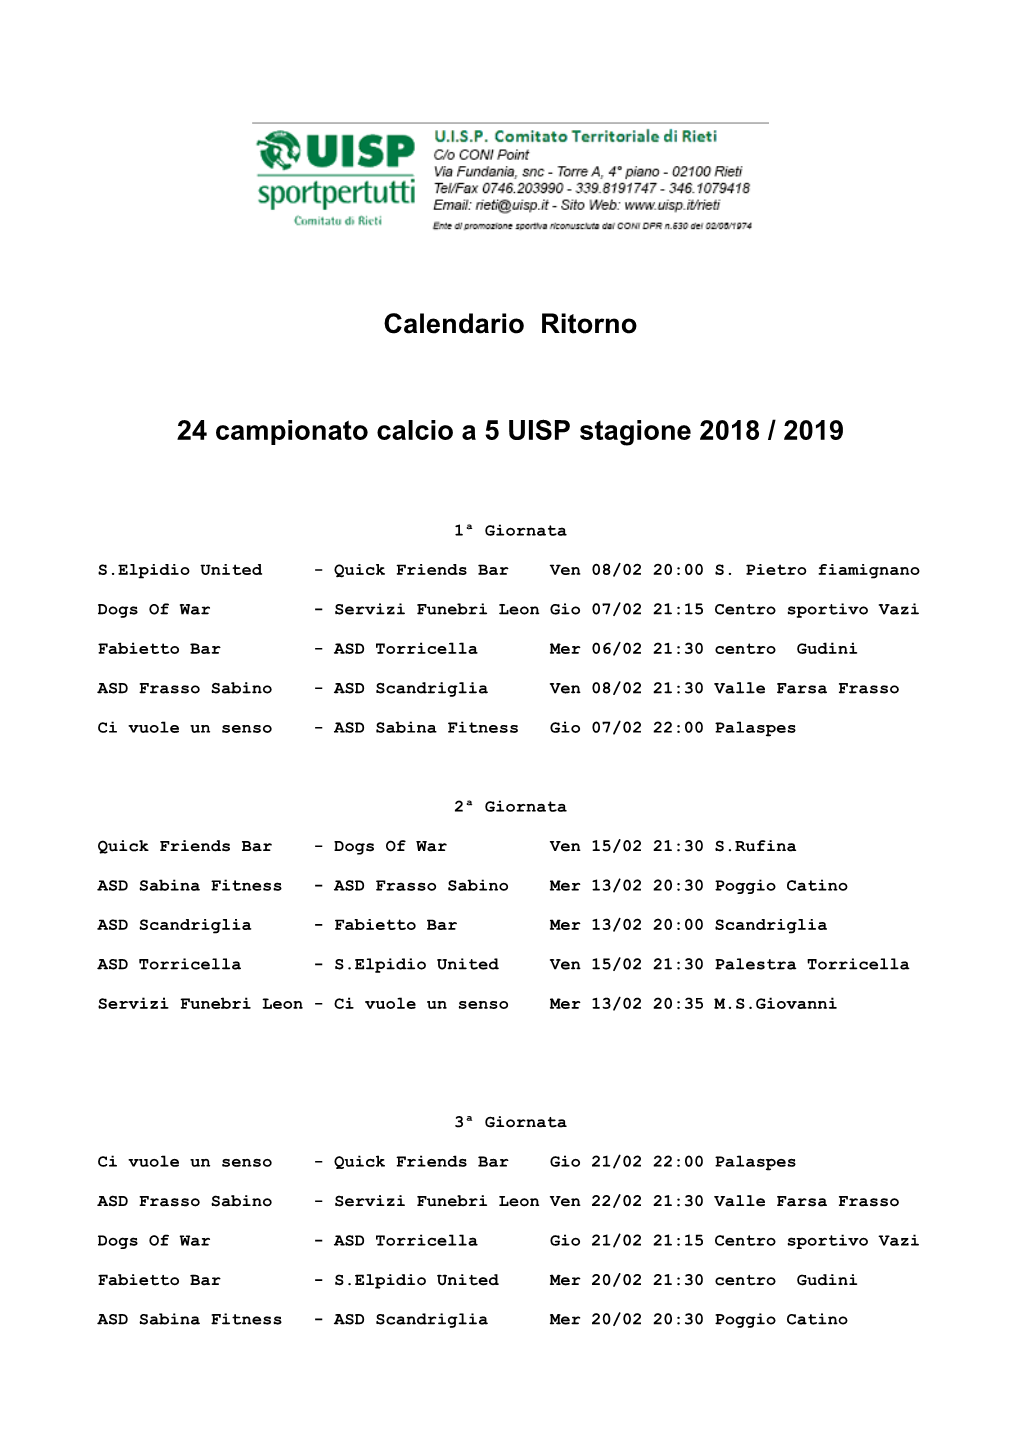 Calendario Ritorno 24 Campionato Calcio a 5 UISP Stagione 2018 / 2019